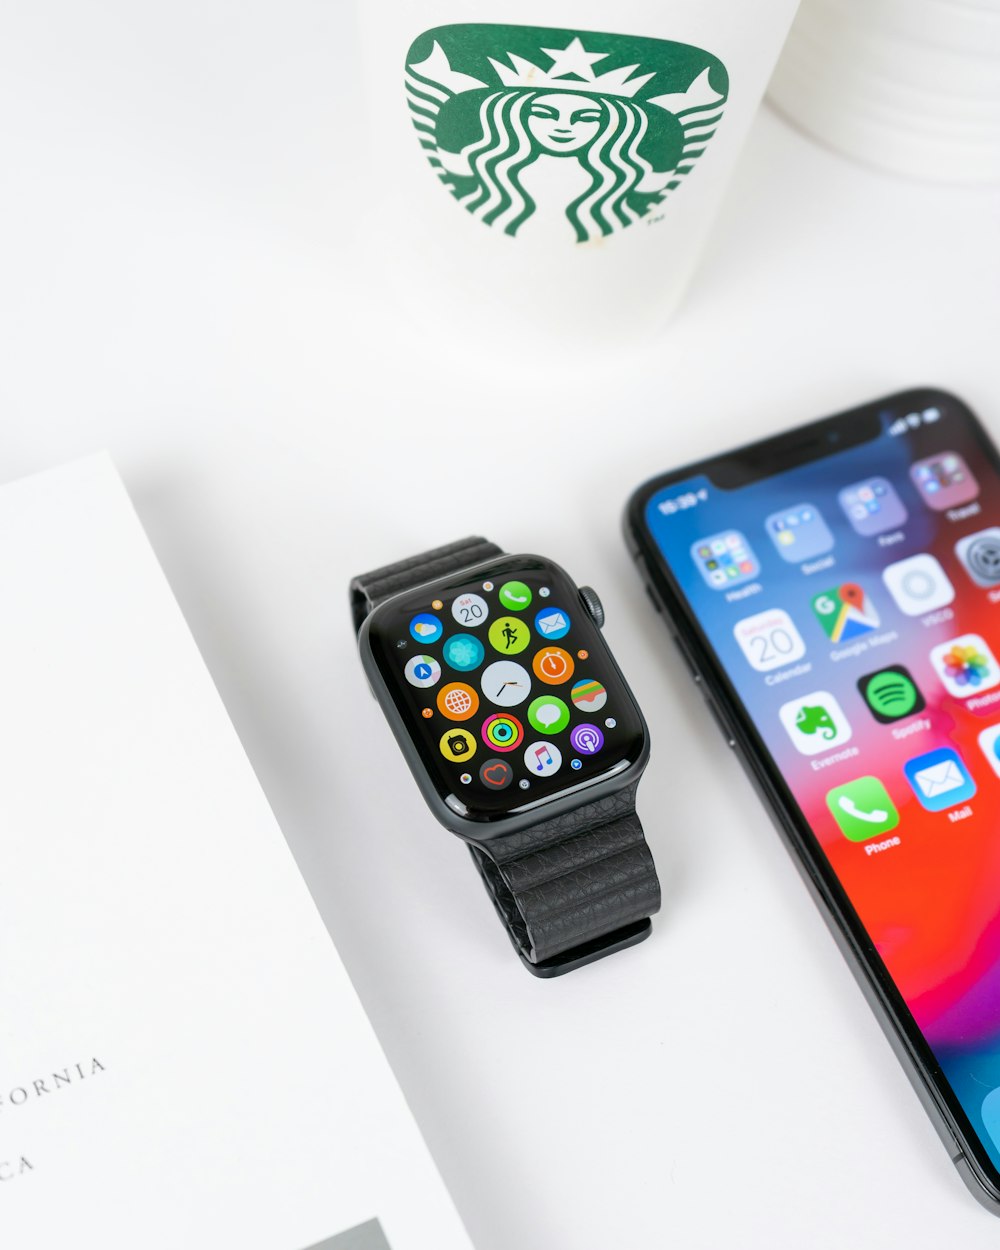 Custodia in alluminio nero Apple Watch con cinturino sportivo nero accanto all'iPhone X grigio siderale acceso